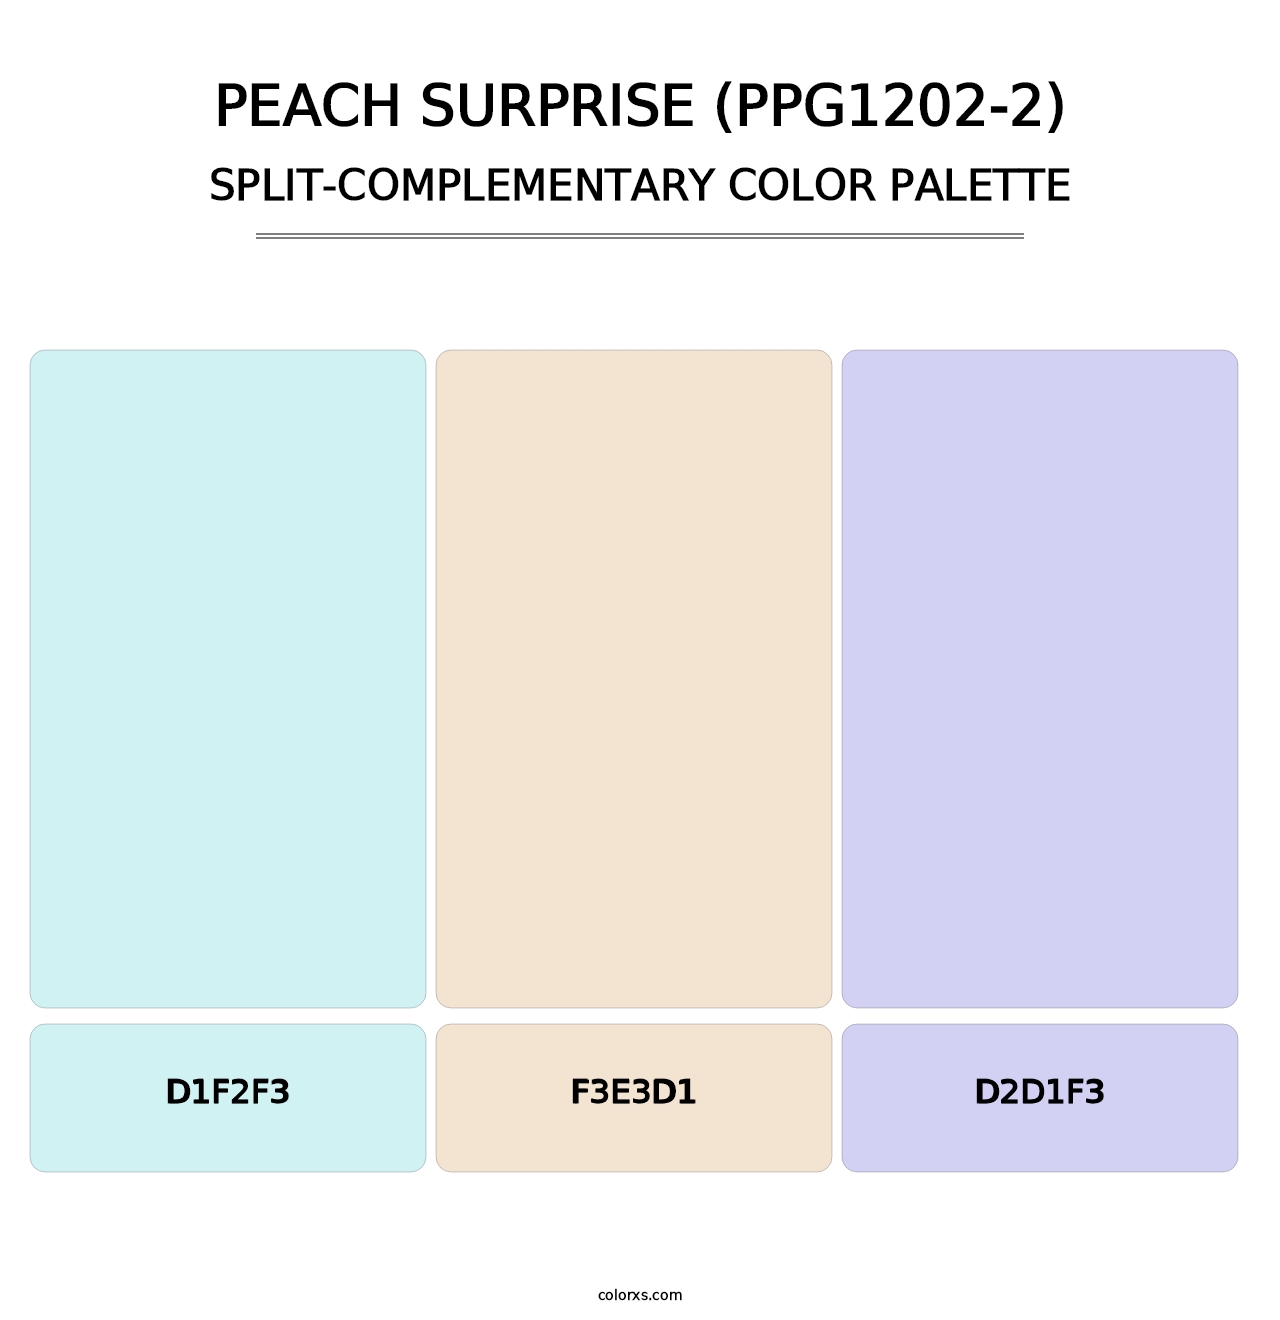 Peach Surprise (PPG1202-2) - Split-Complementary Color Palette